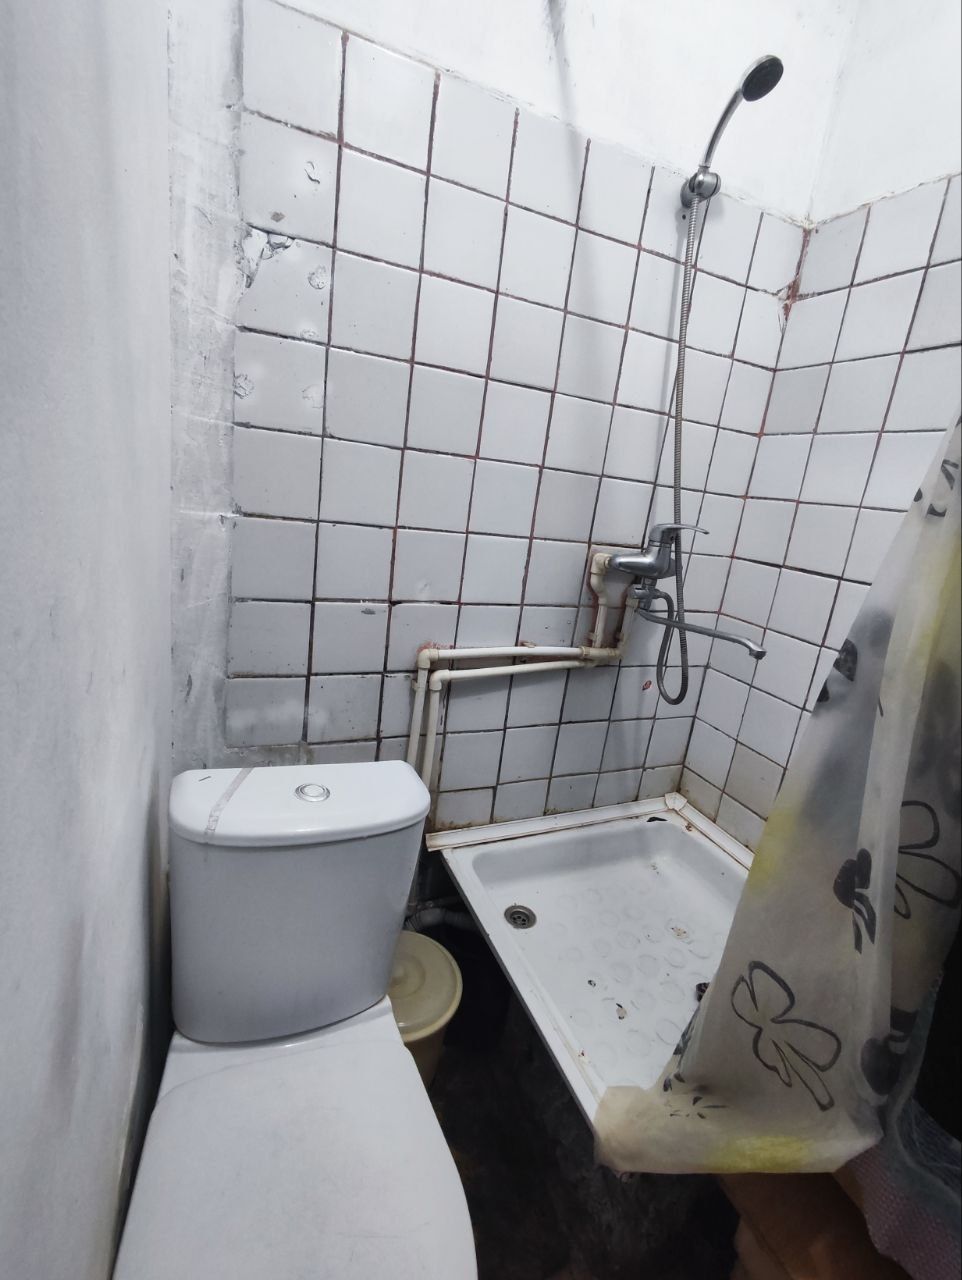 Продам общежитие бывшее на ттз туалет ванна своя не общая